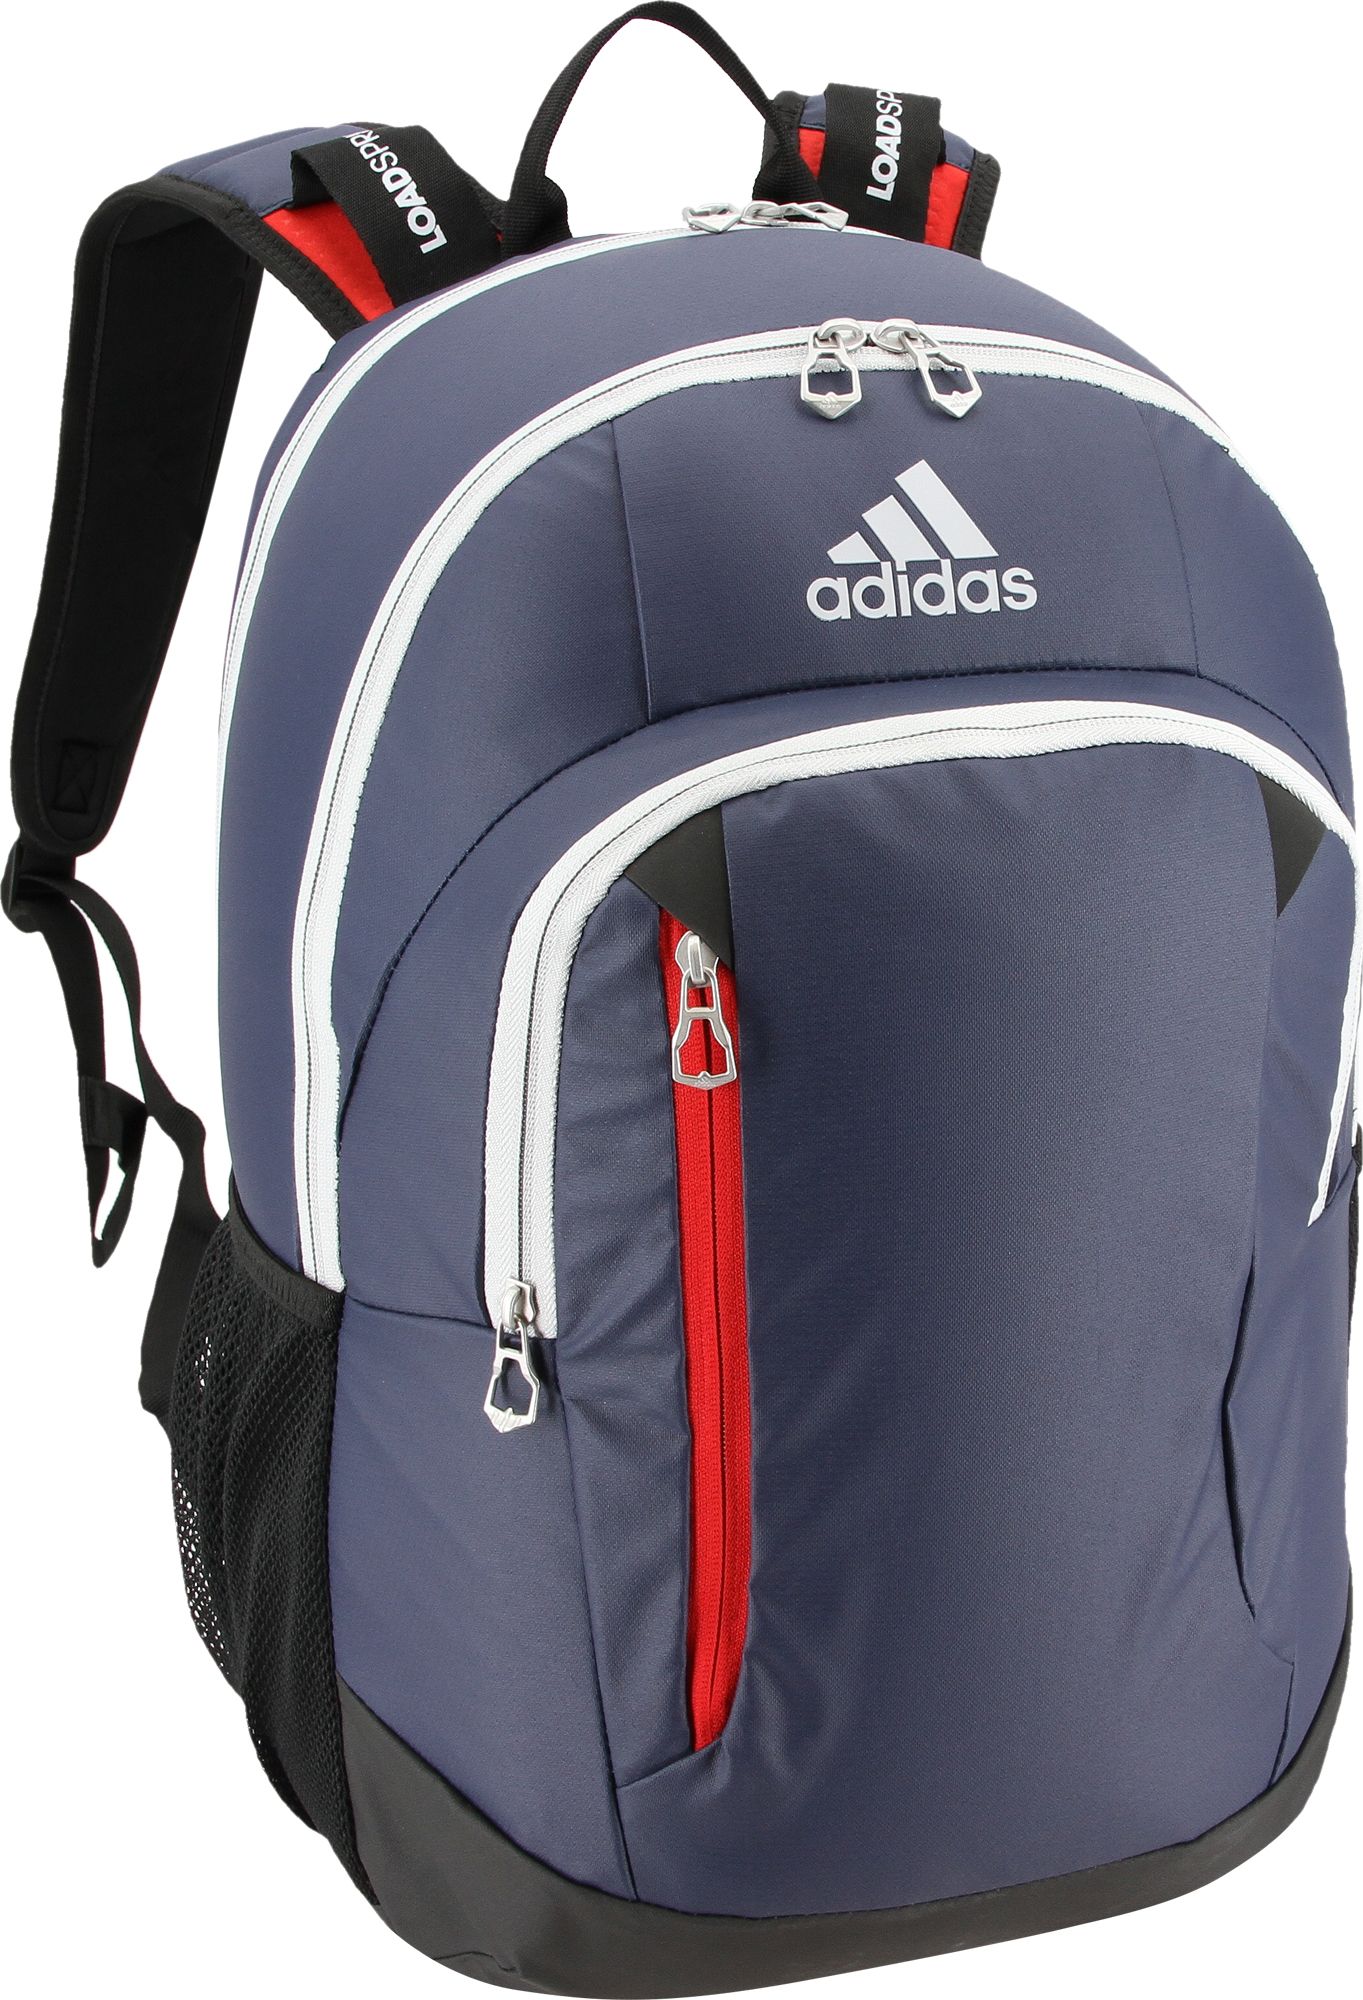 adidas warranty backpack